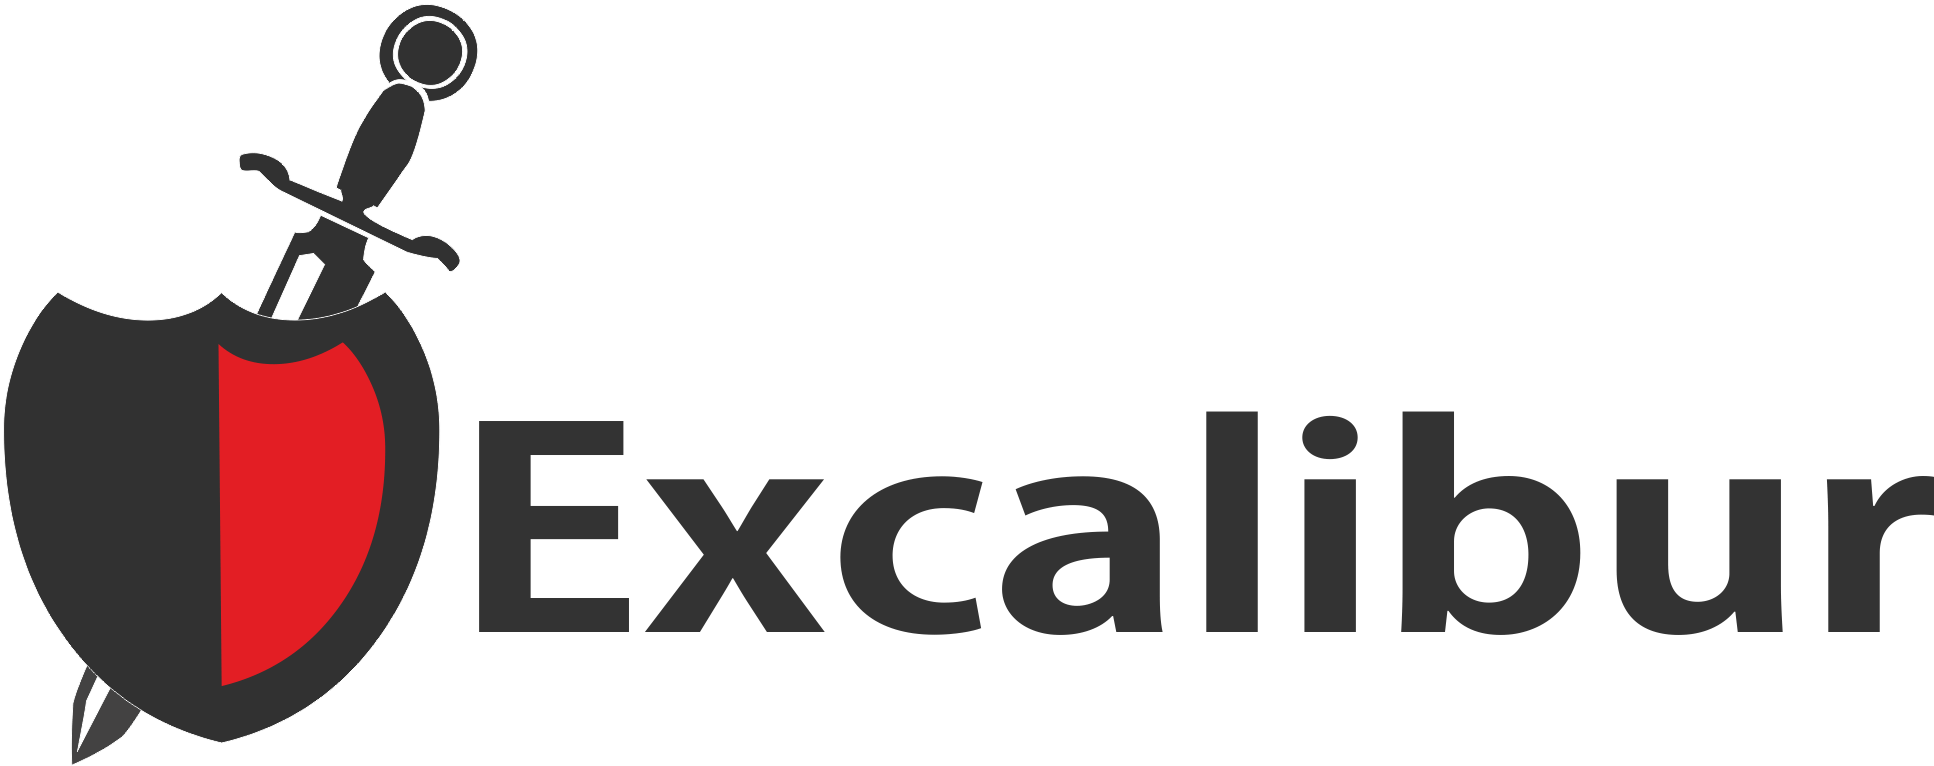 Excalibur Logo - Excalibur Logo